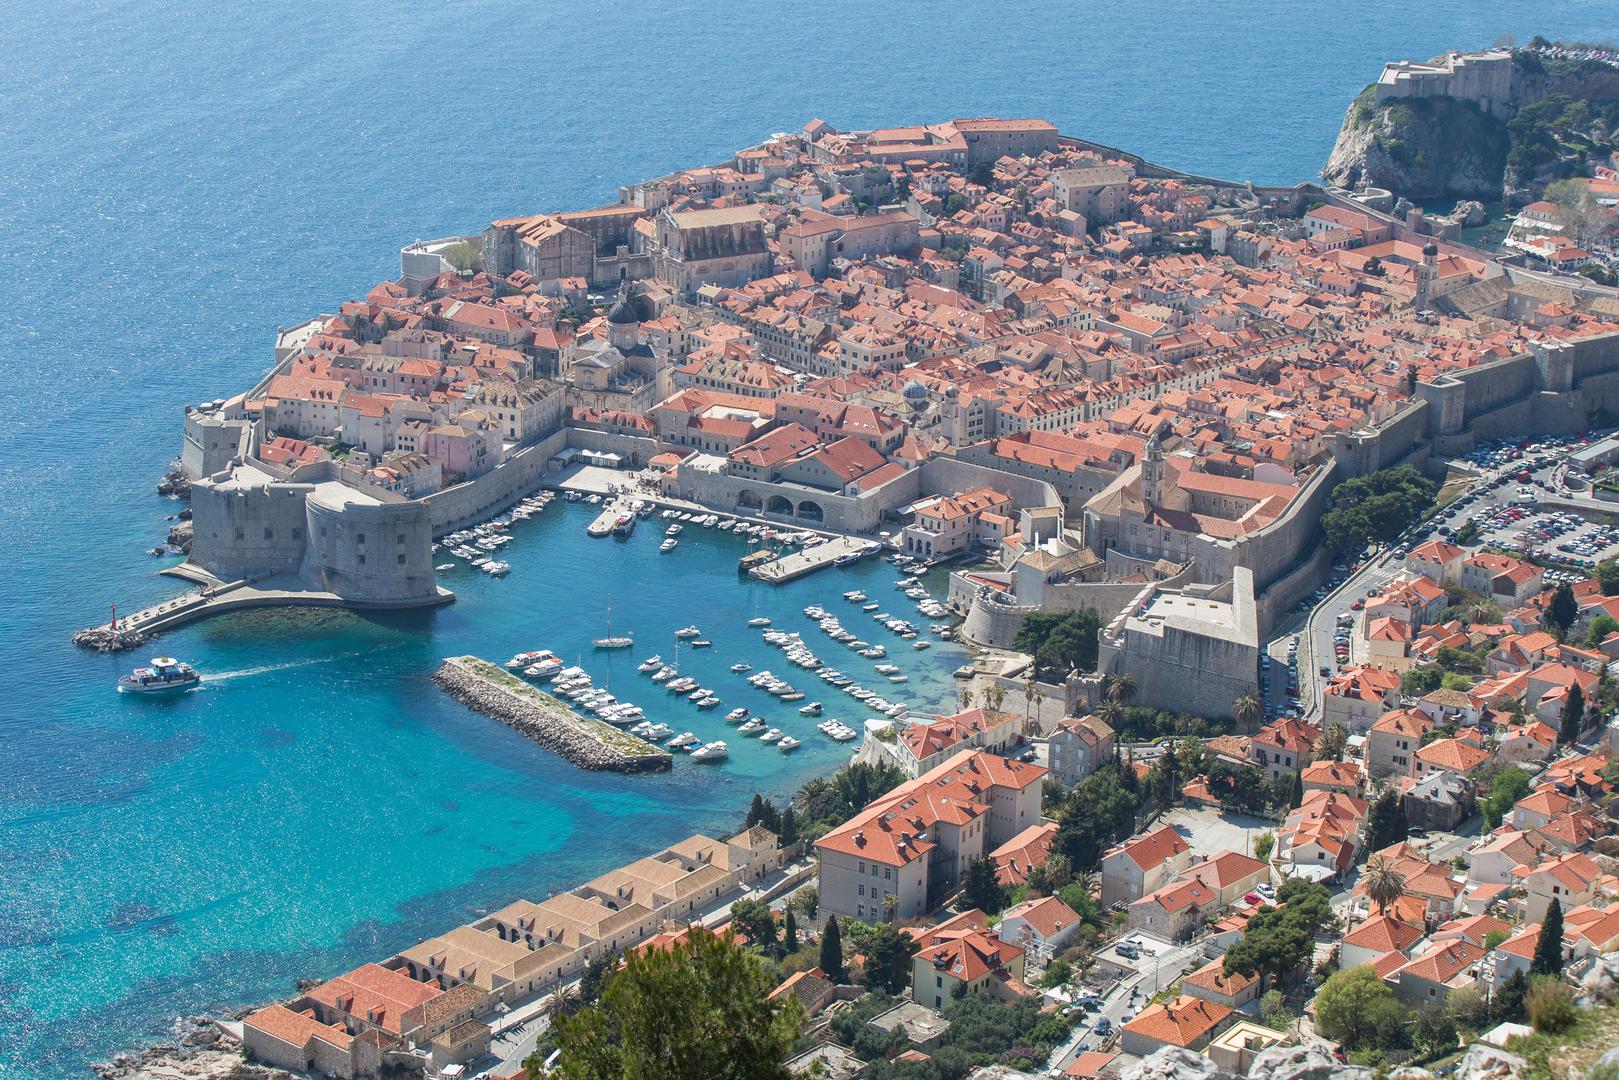 7,6 prema Richteru bila je magnituda najjačeg potresa zabilježenog na ovim prostorima, a koji se dogodio 1667. godine u Dubrovniku kad je poginulo oko 300 ljudi